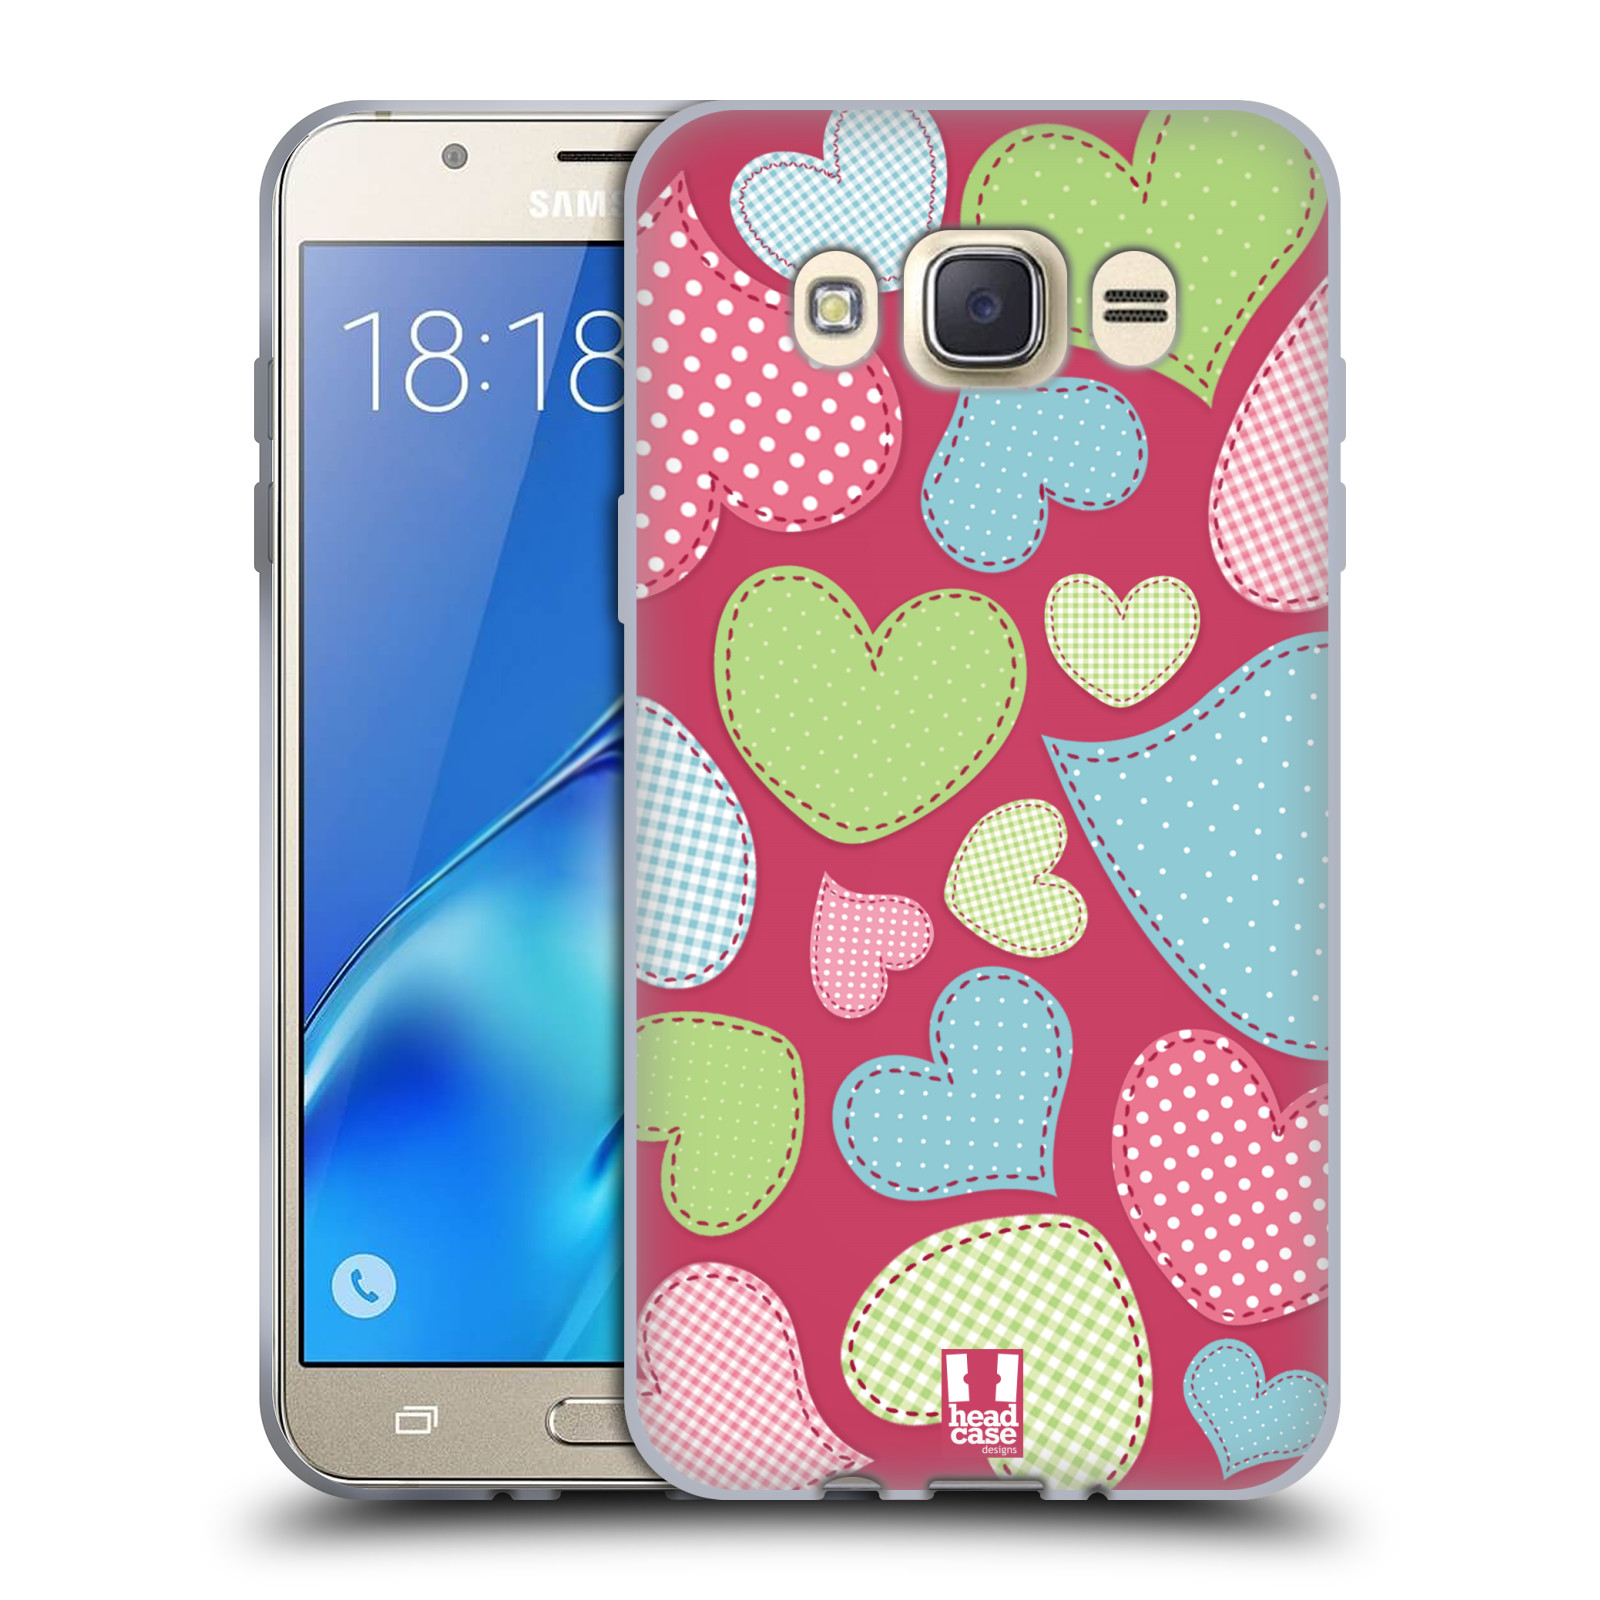 HEAD CASE silikonový obal, kryt na mobil Samsung Galaxy J7 2016 (J710, J710F) vzor Srdíčka RŮŽOVÁ IMITACE NÁŠIVKA